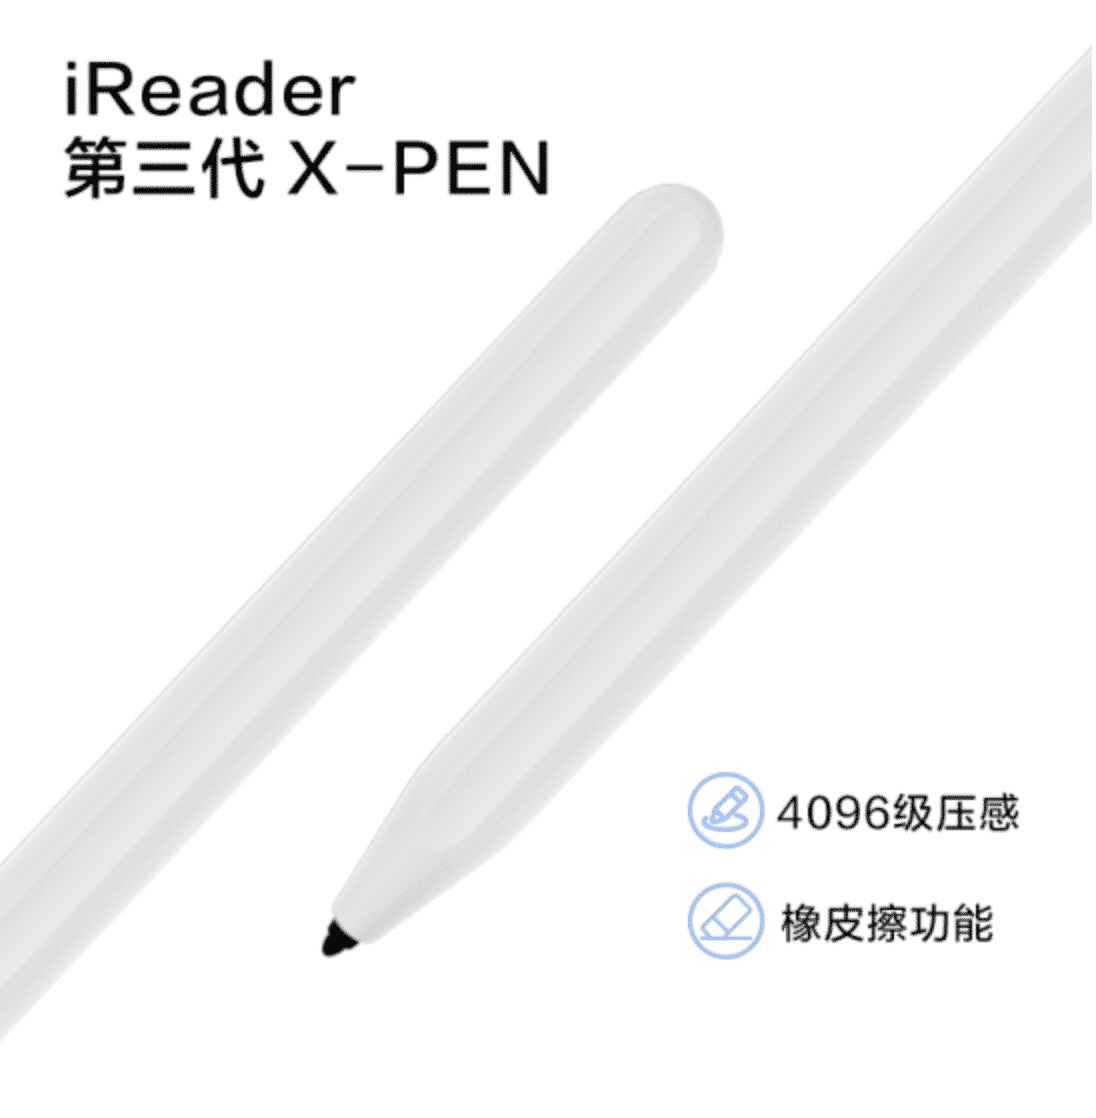 iReader X-Pen Gen 3 EMR Stylus with Eraser